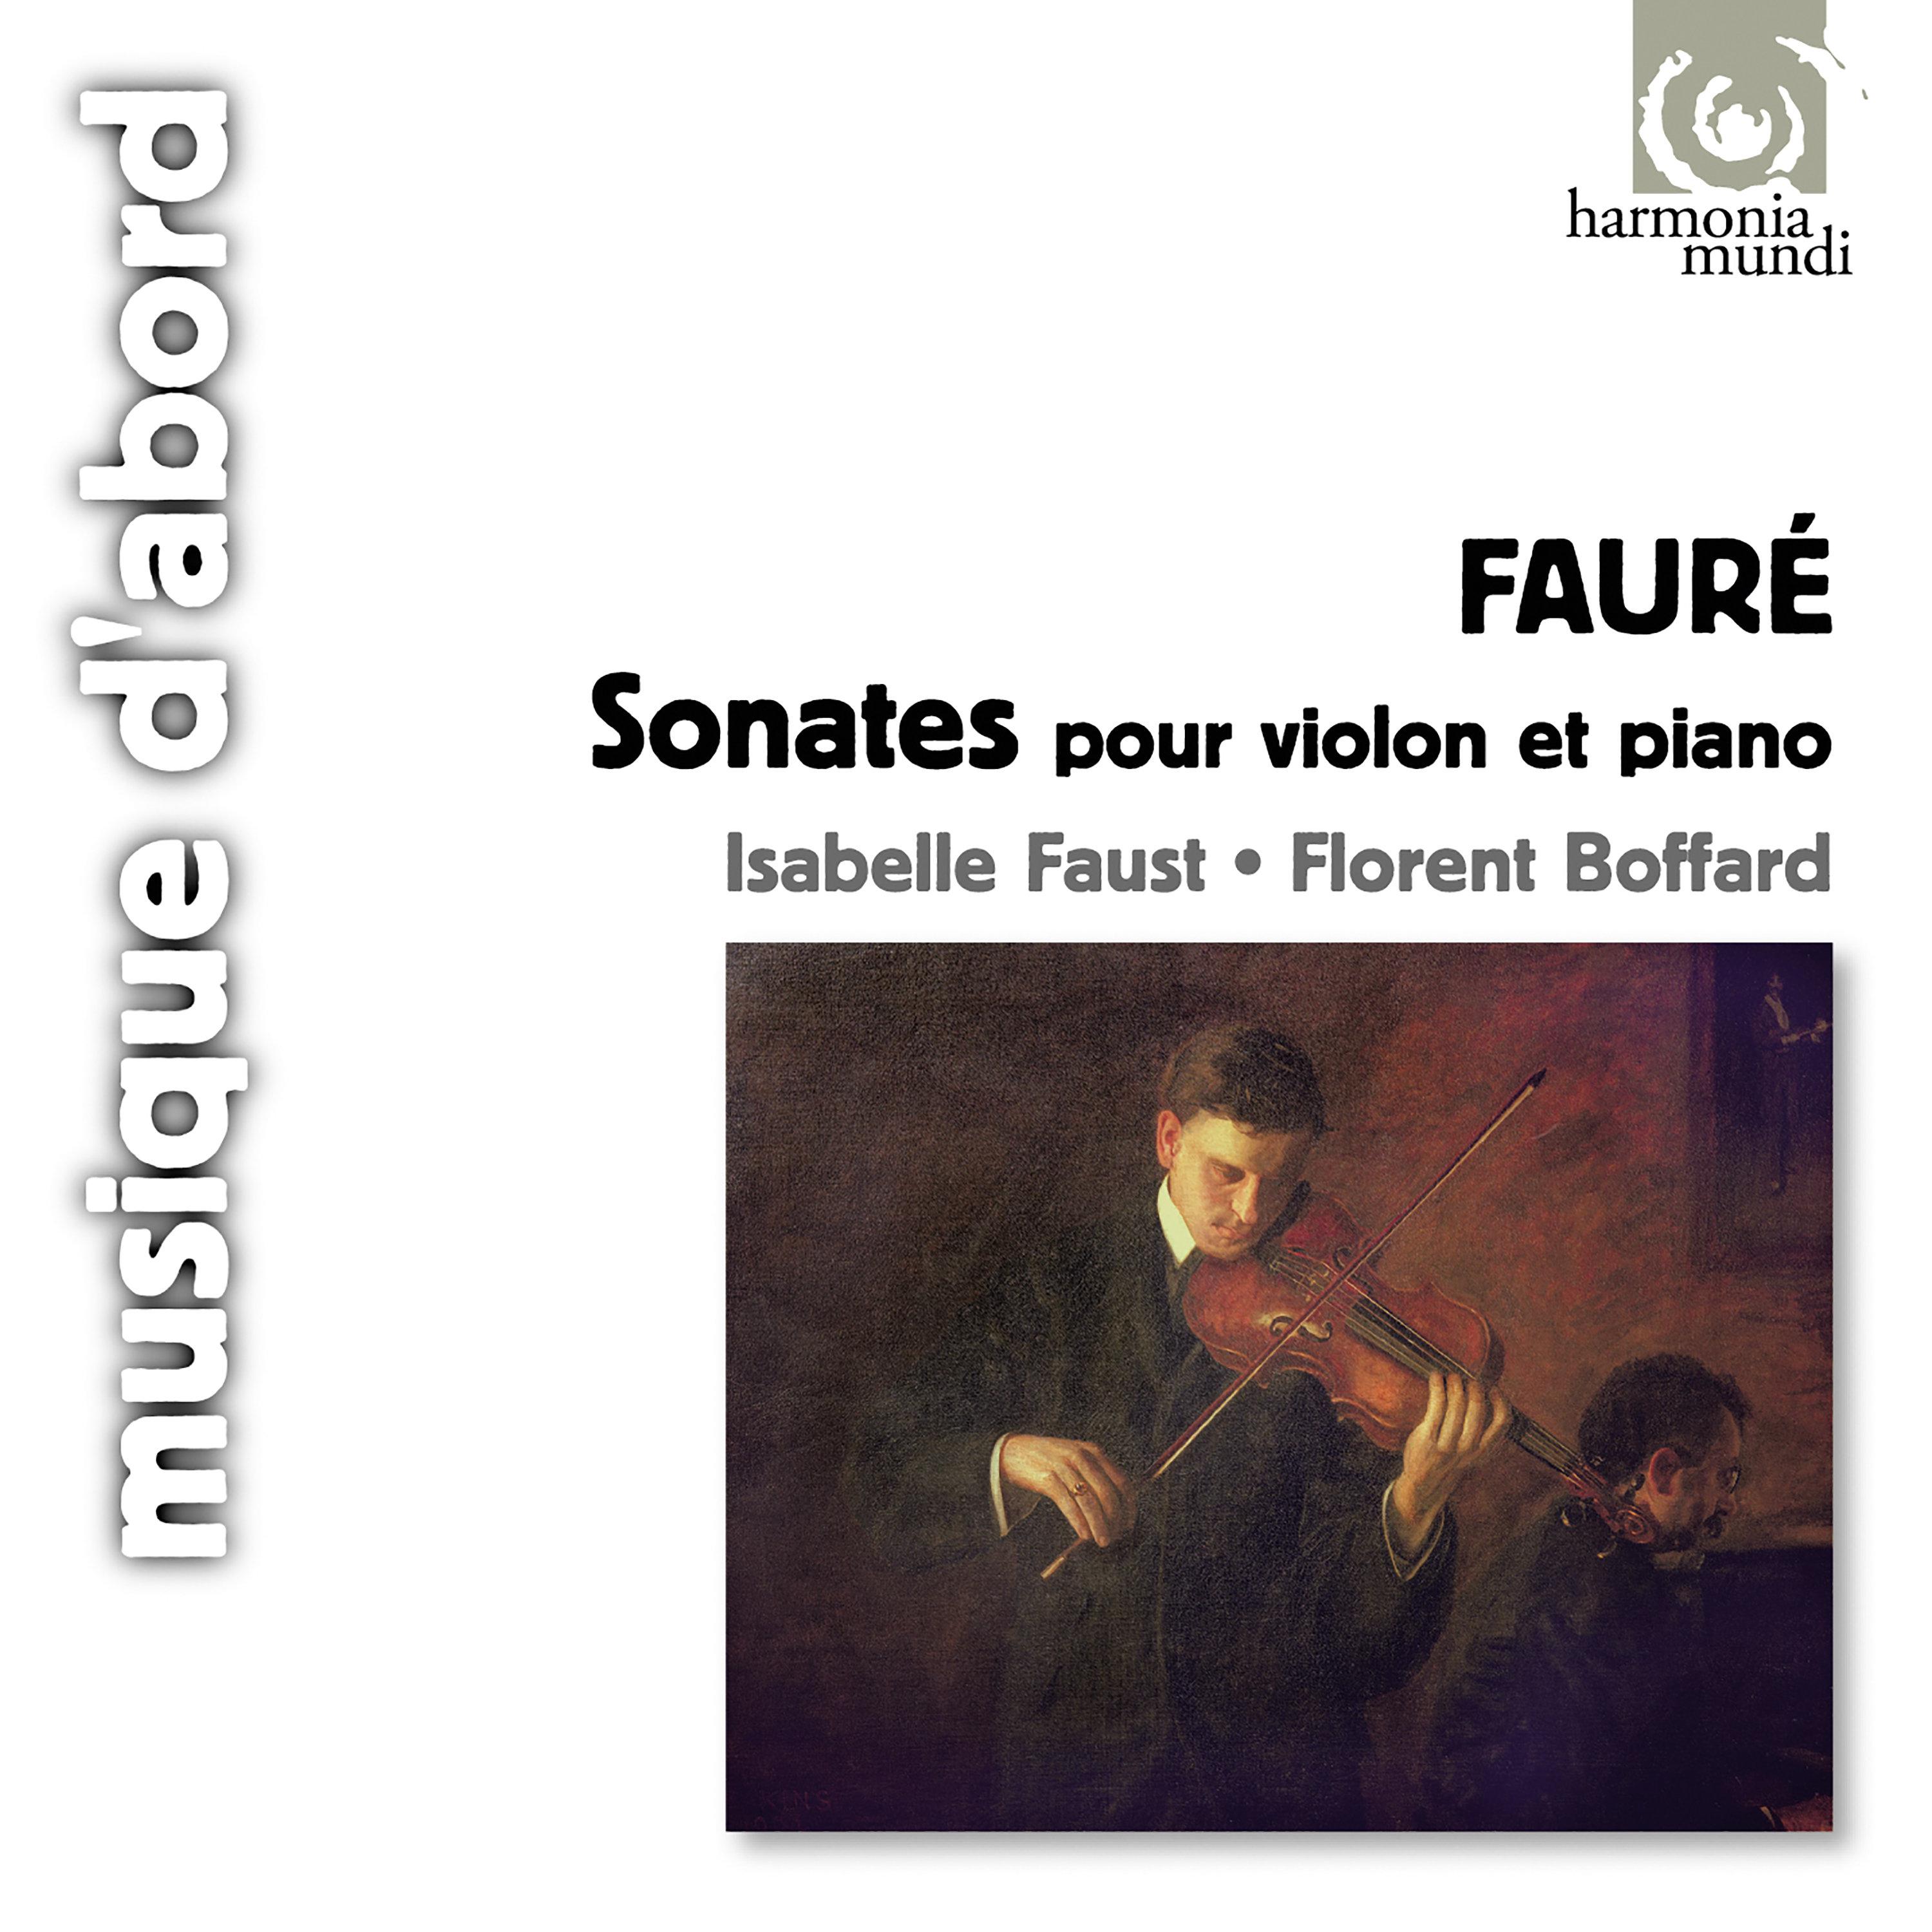 Faure: Sonatas for Violin and Piano